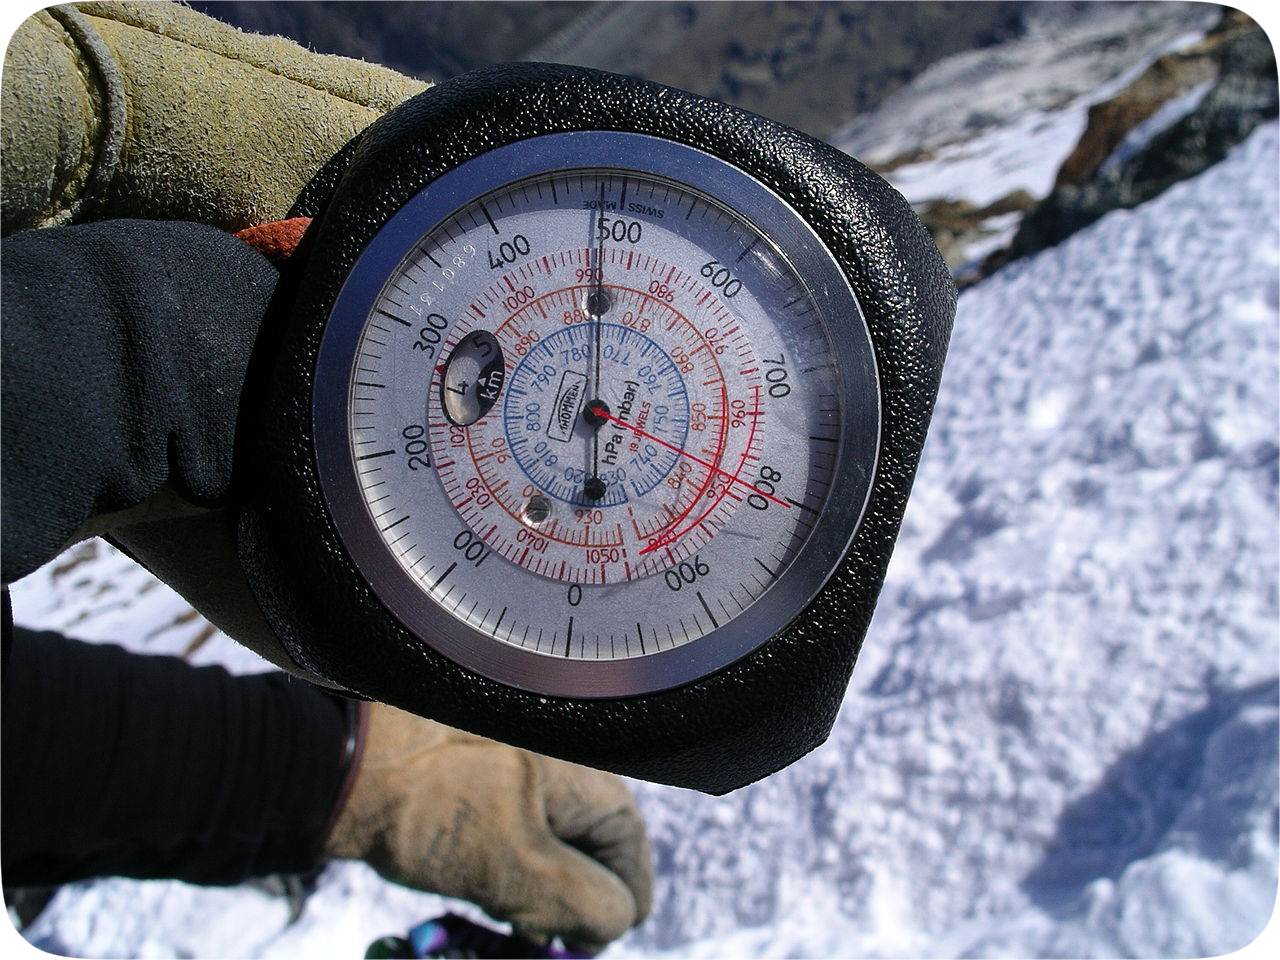 An Altimeter